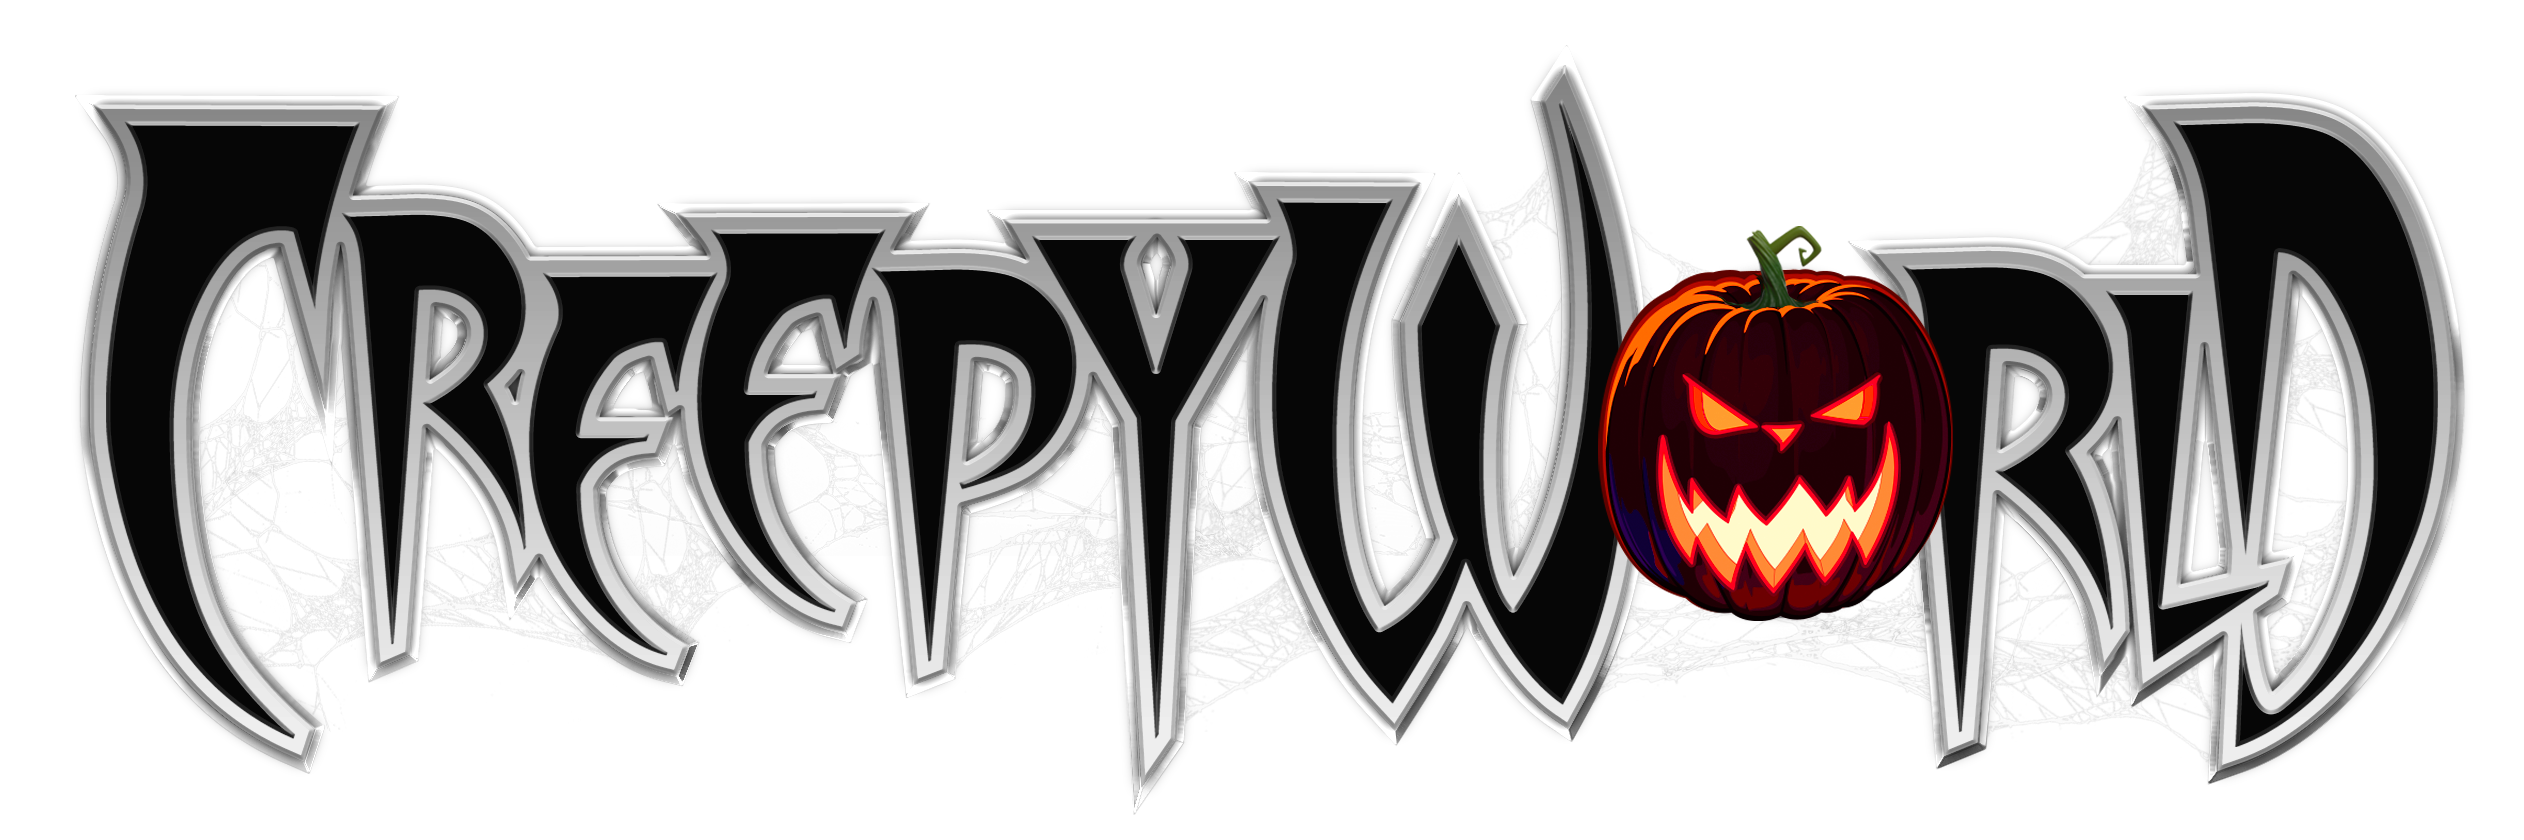 Creepyworld logo 2021 silver